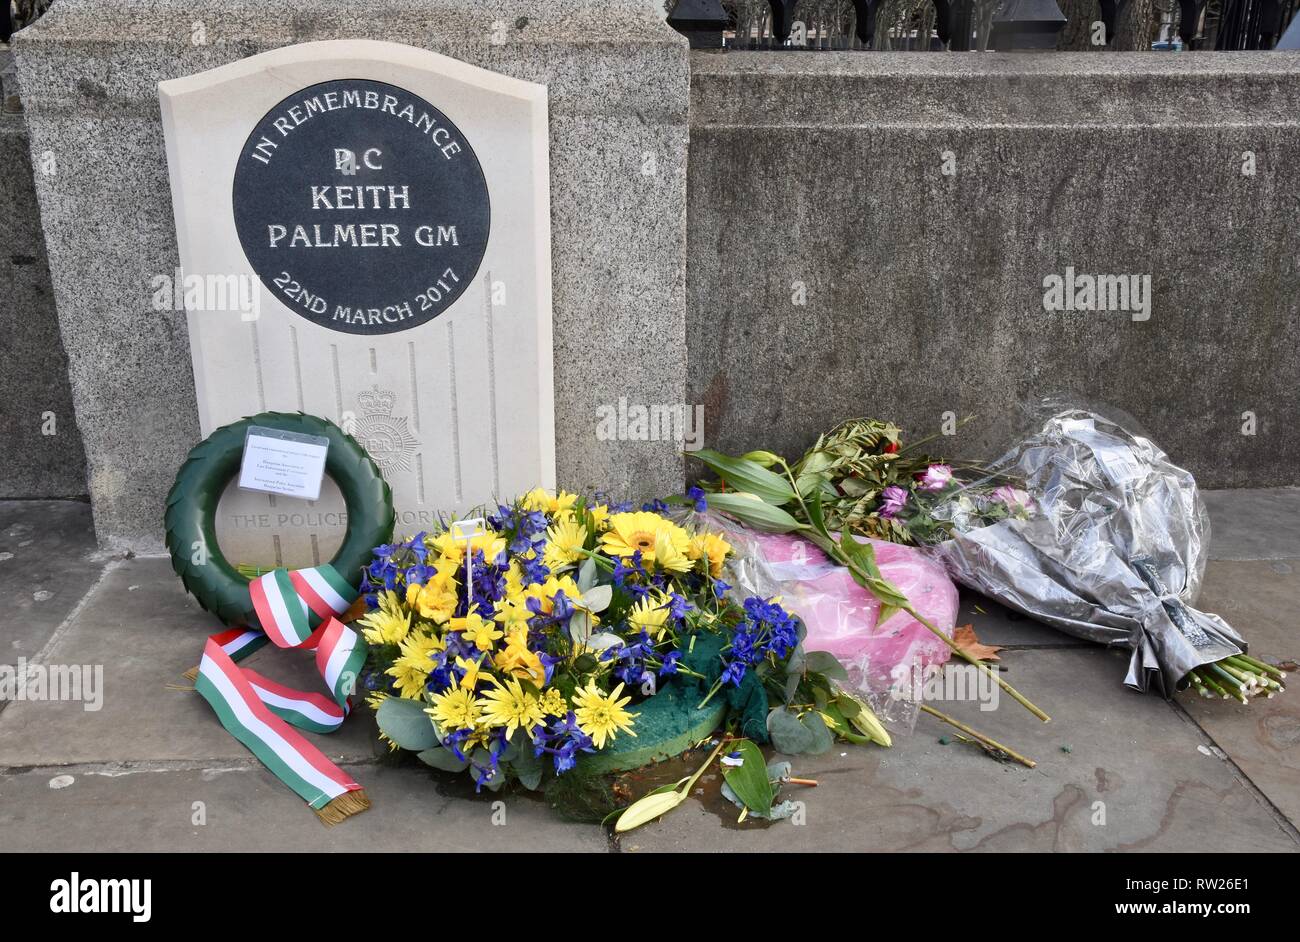 4e Mar 2019. Bouquets continuent d'être portées au nouveau mémorial pour PC Keith Palmer à l'approche du deuxième anniversaire de sa mort dans l'attaque terroriste sur le Westminster Bridge 22.03.2017.Chambres du Parlement de Westminster, London,UK.Crédit : michael melia/Alamy Live News Banque D'Images